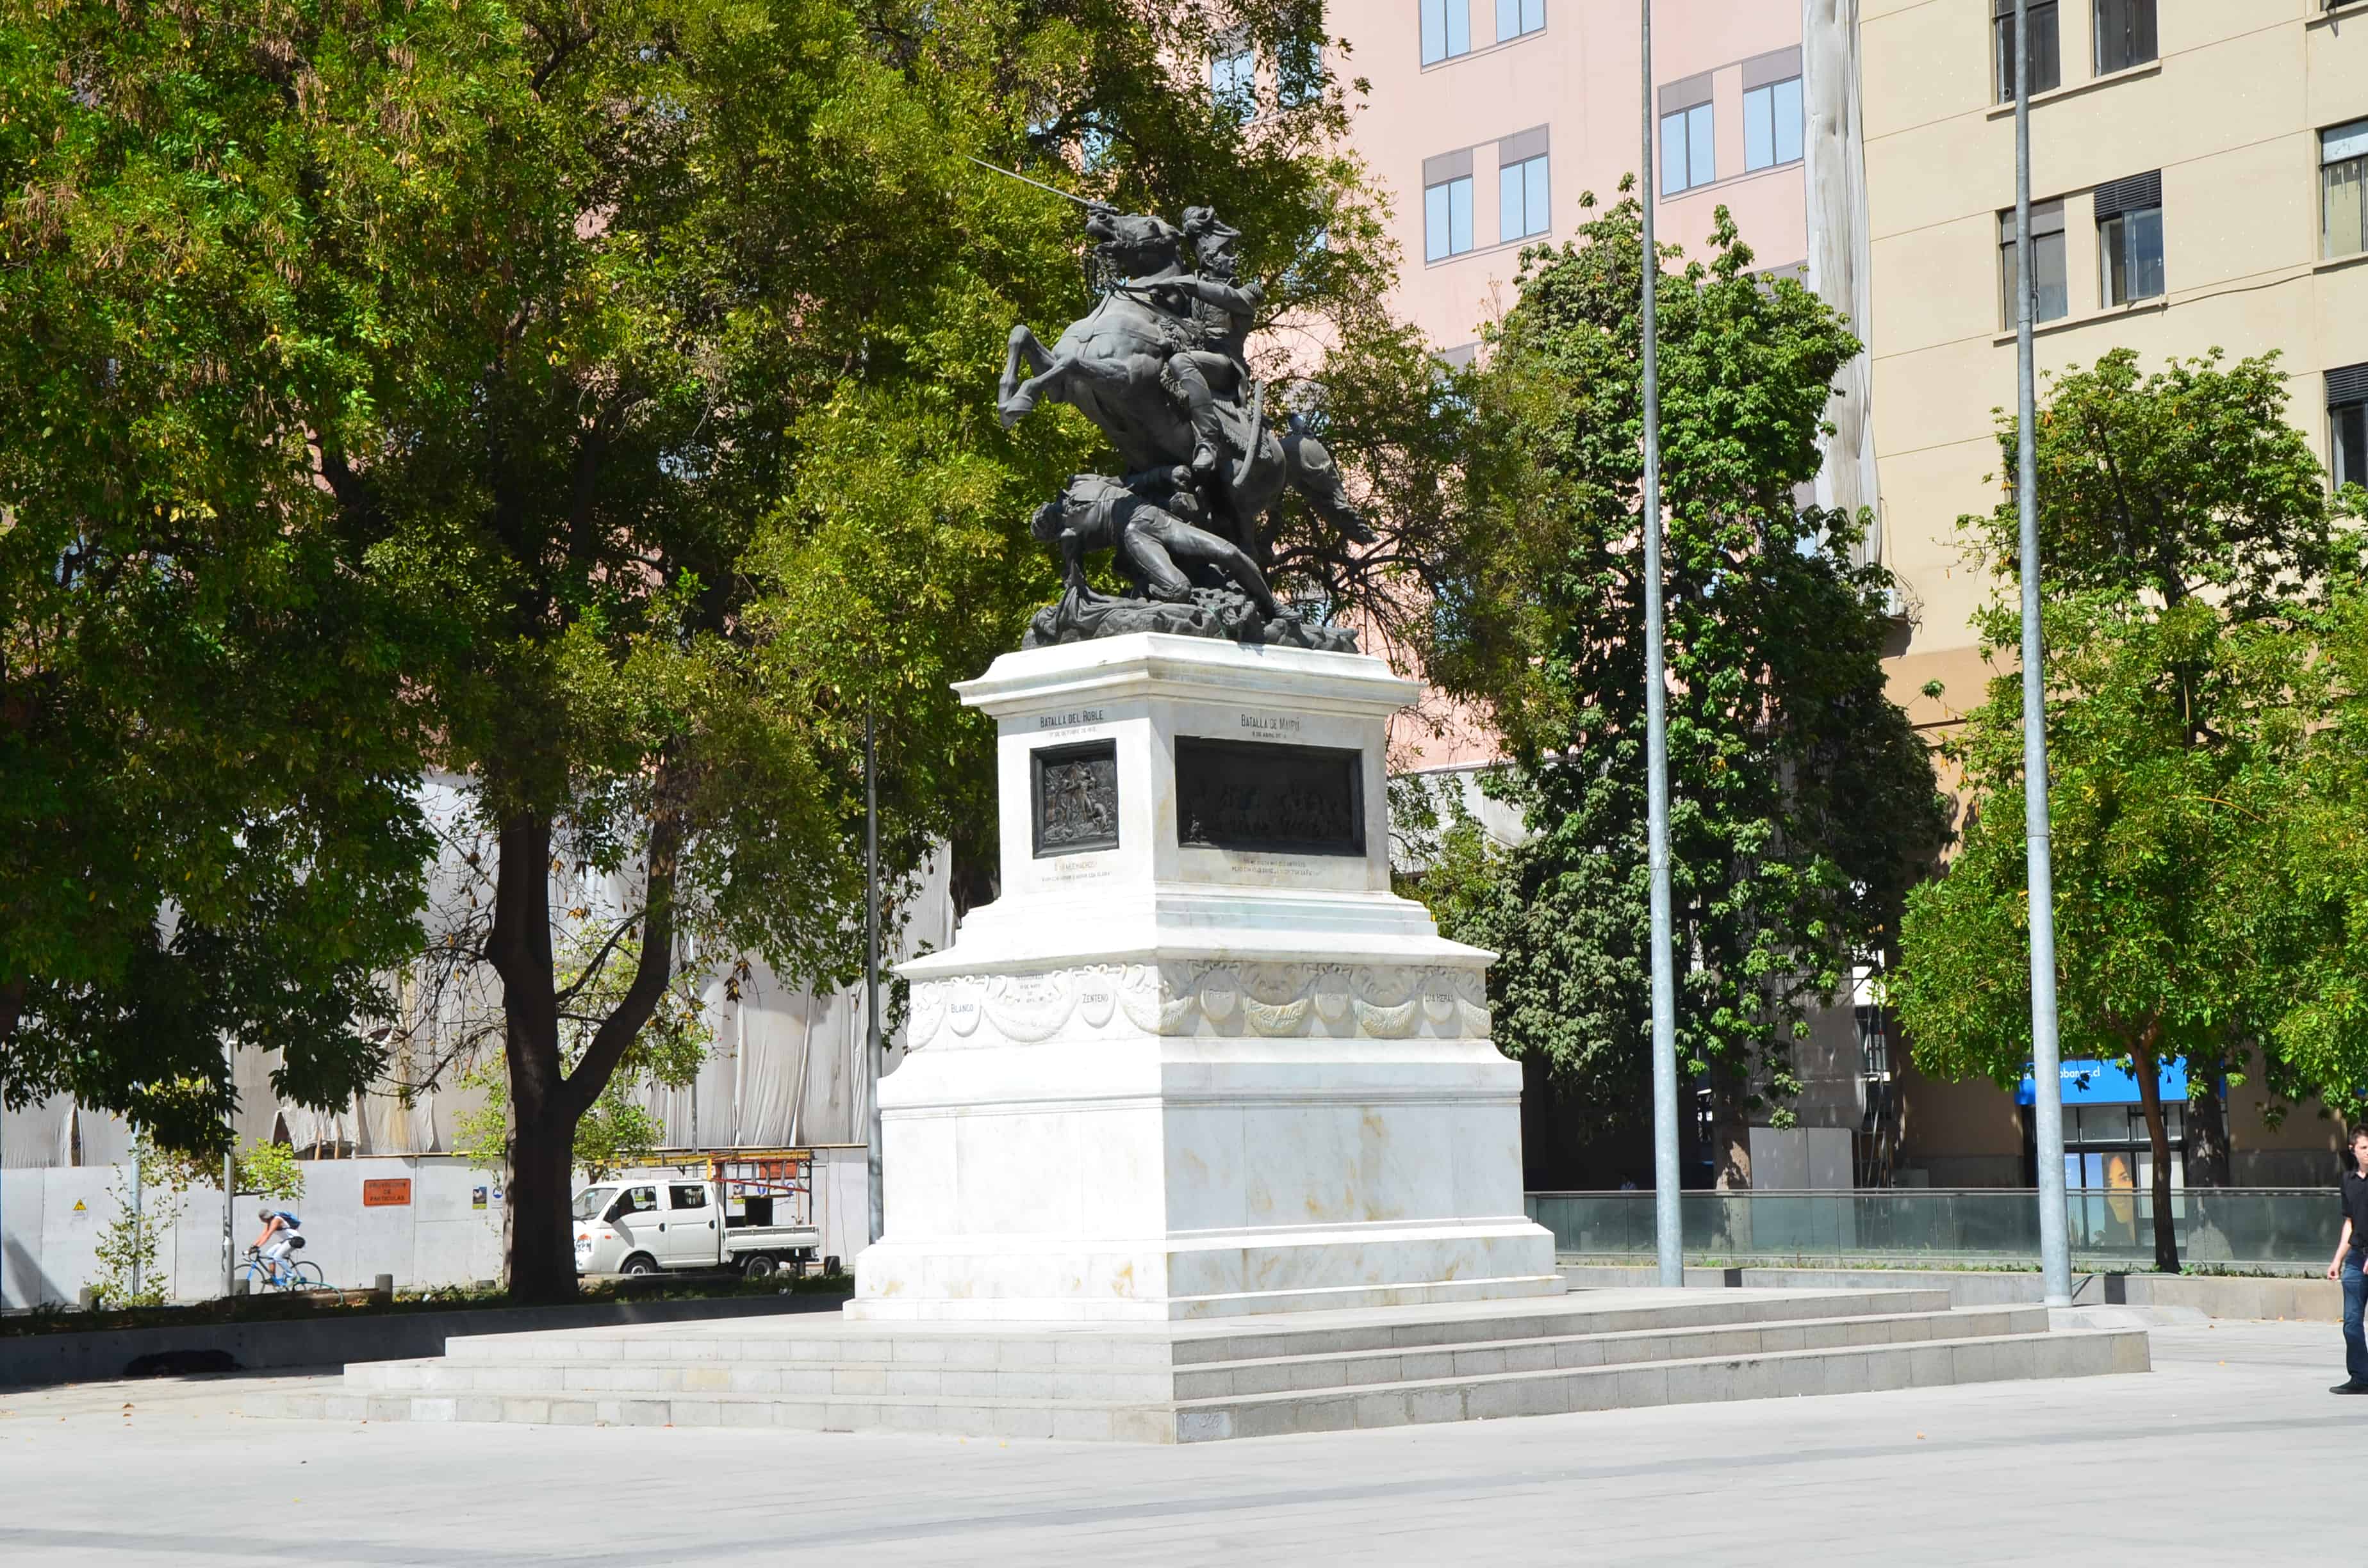 Plaza Bulnes in Santiago de Chile